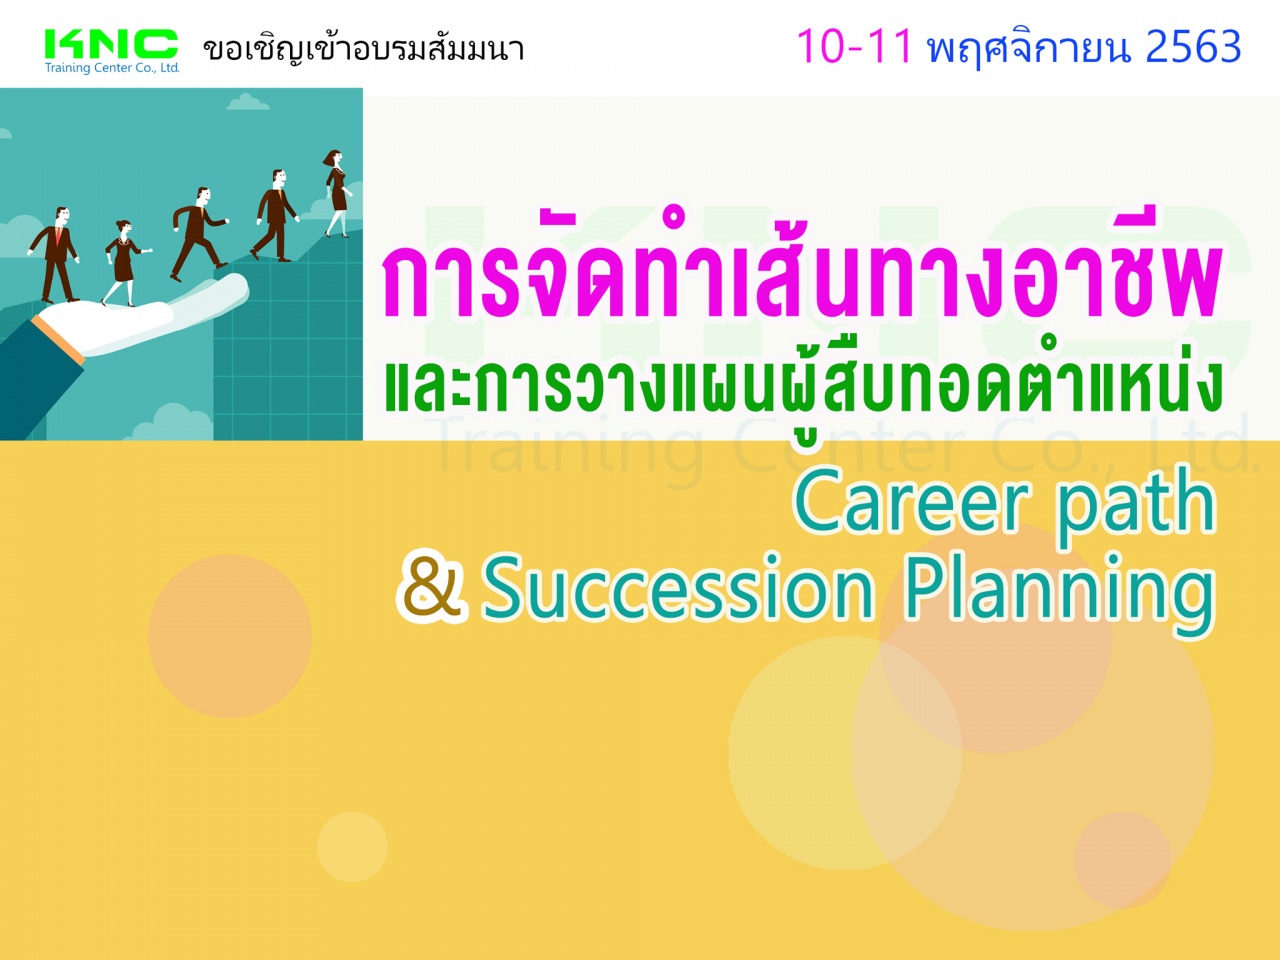 การจัดทำเส้นทางอาชีพและการวางแผนผู้สืบทอดตำแหน่ง (Career path & Succession Planning)